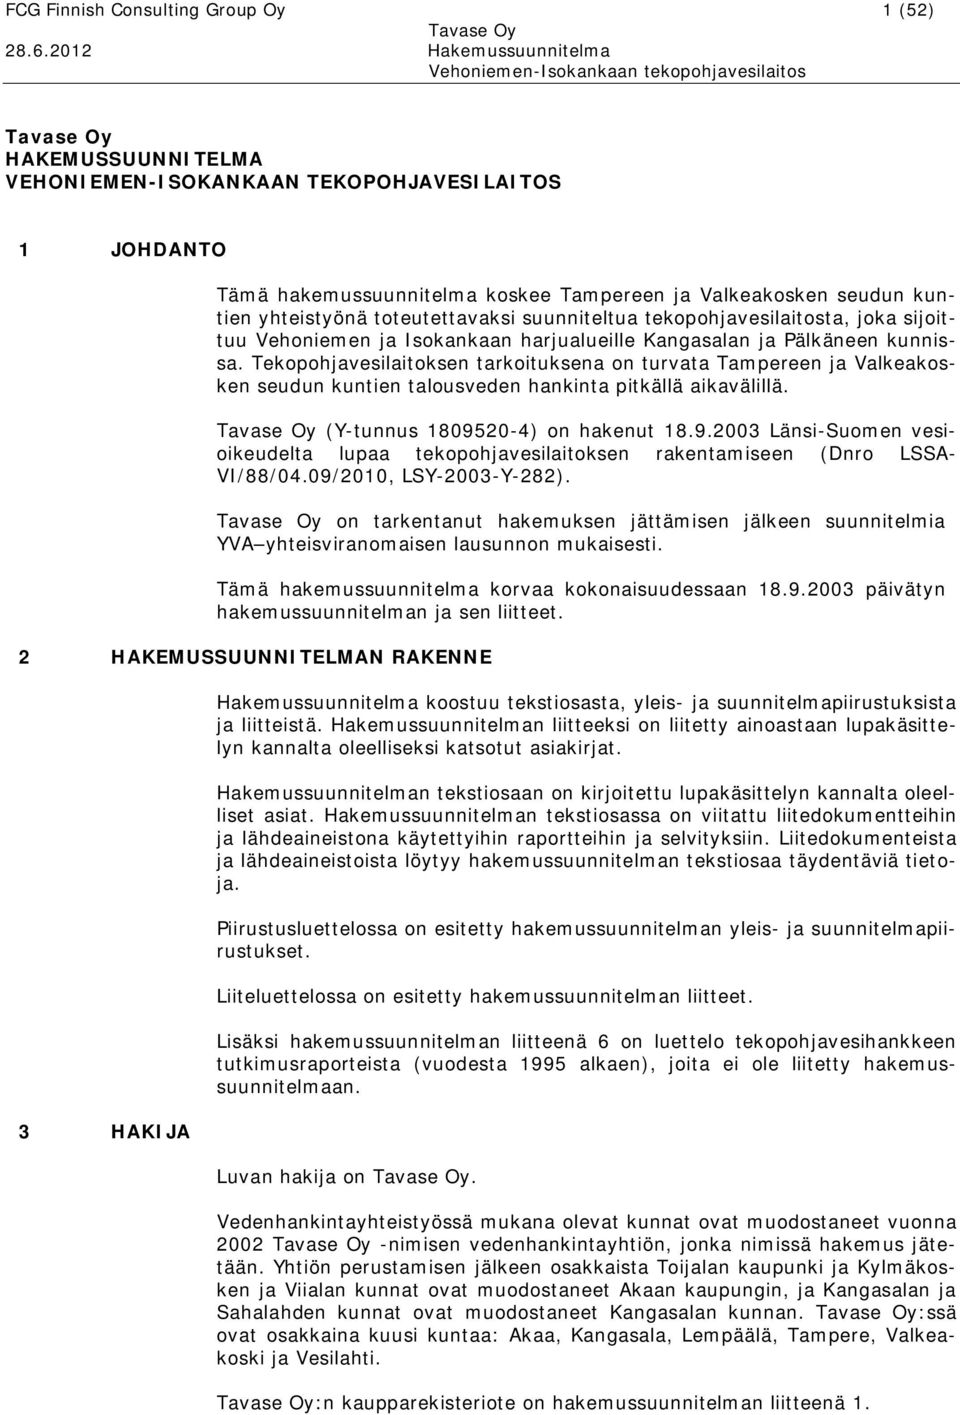 Tekopohjavesilaitoksen tarkoituksena on turvata Tampereen ja Valkeakosken seudun kuntien talousveden hankinta pitkällä aikavälillä. (Y tunnus 18095